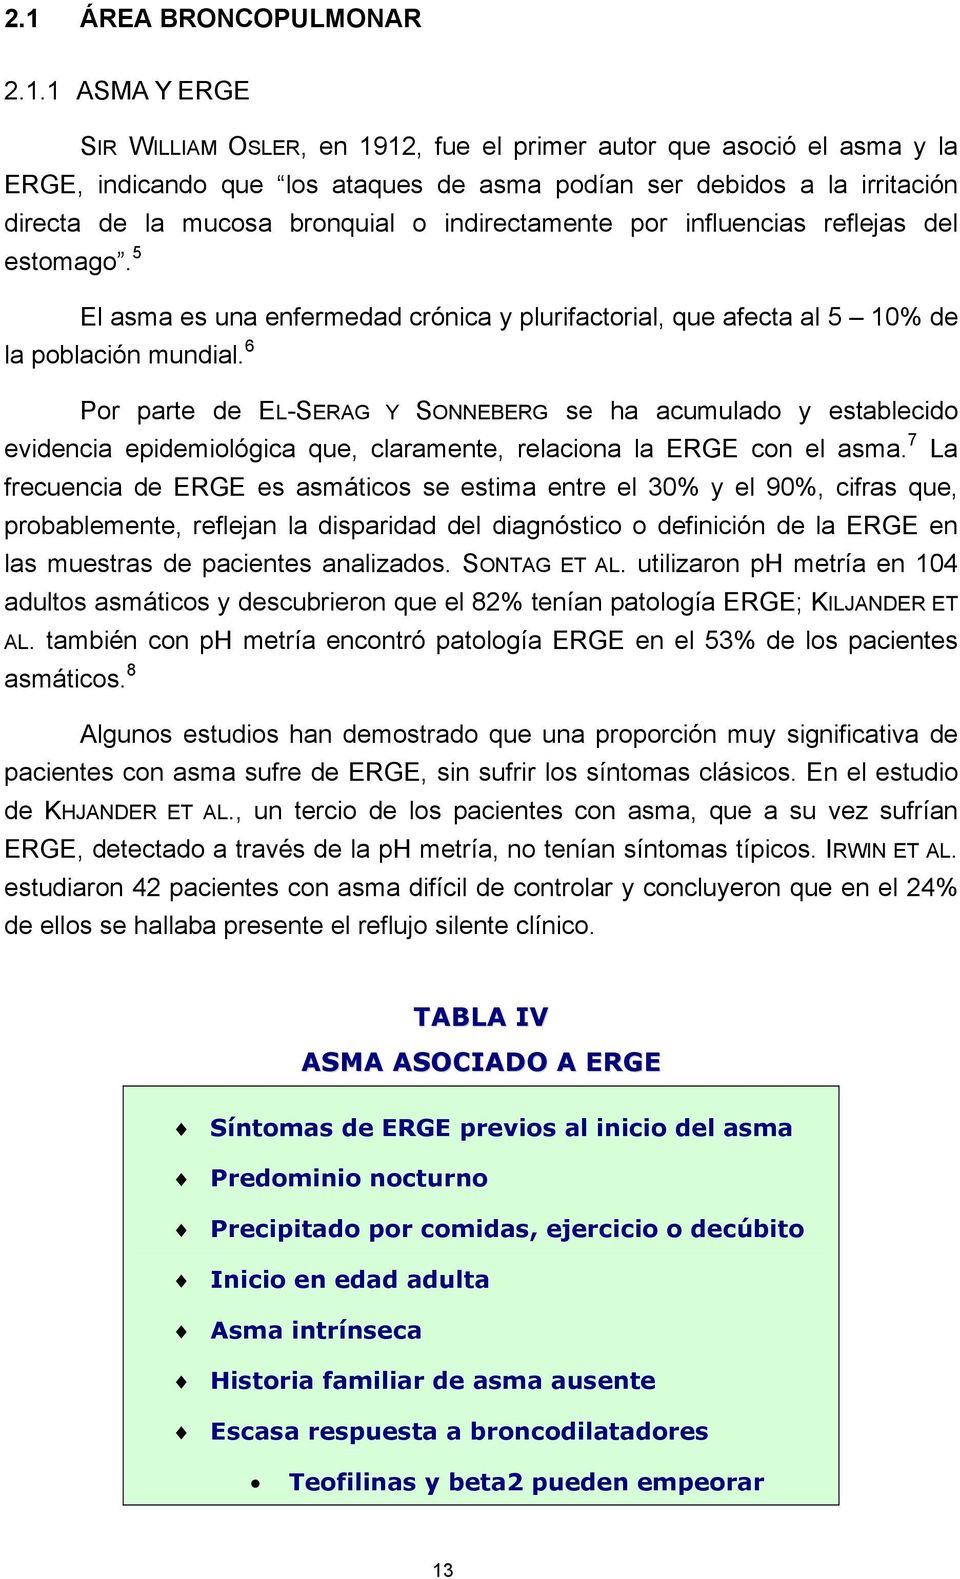 6 Por parte de EL-SERAG Y SONNEBERG se ha acumulado y establecido evidencia epidemiológica que, claramente, relaciona la ERGE con el asma.